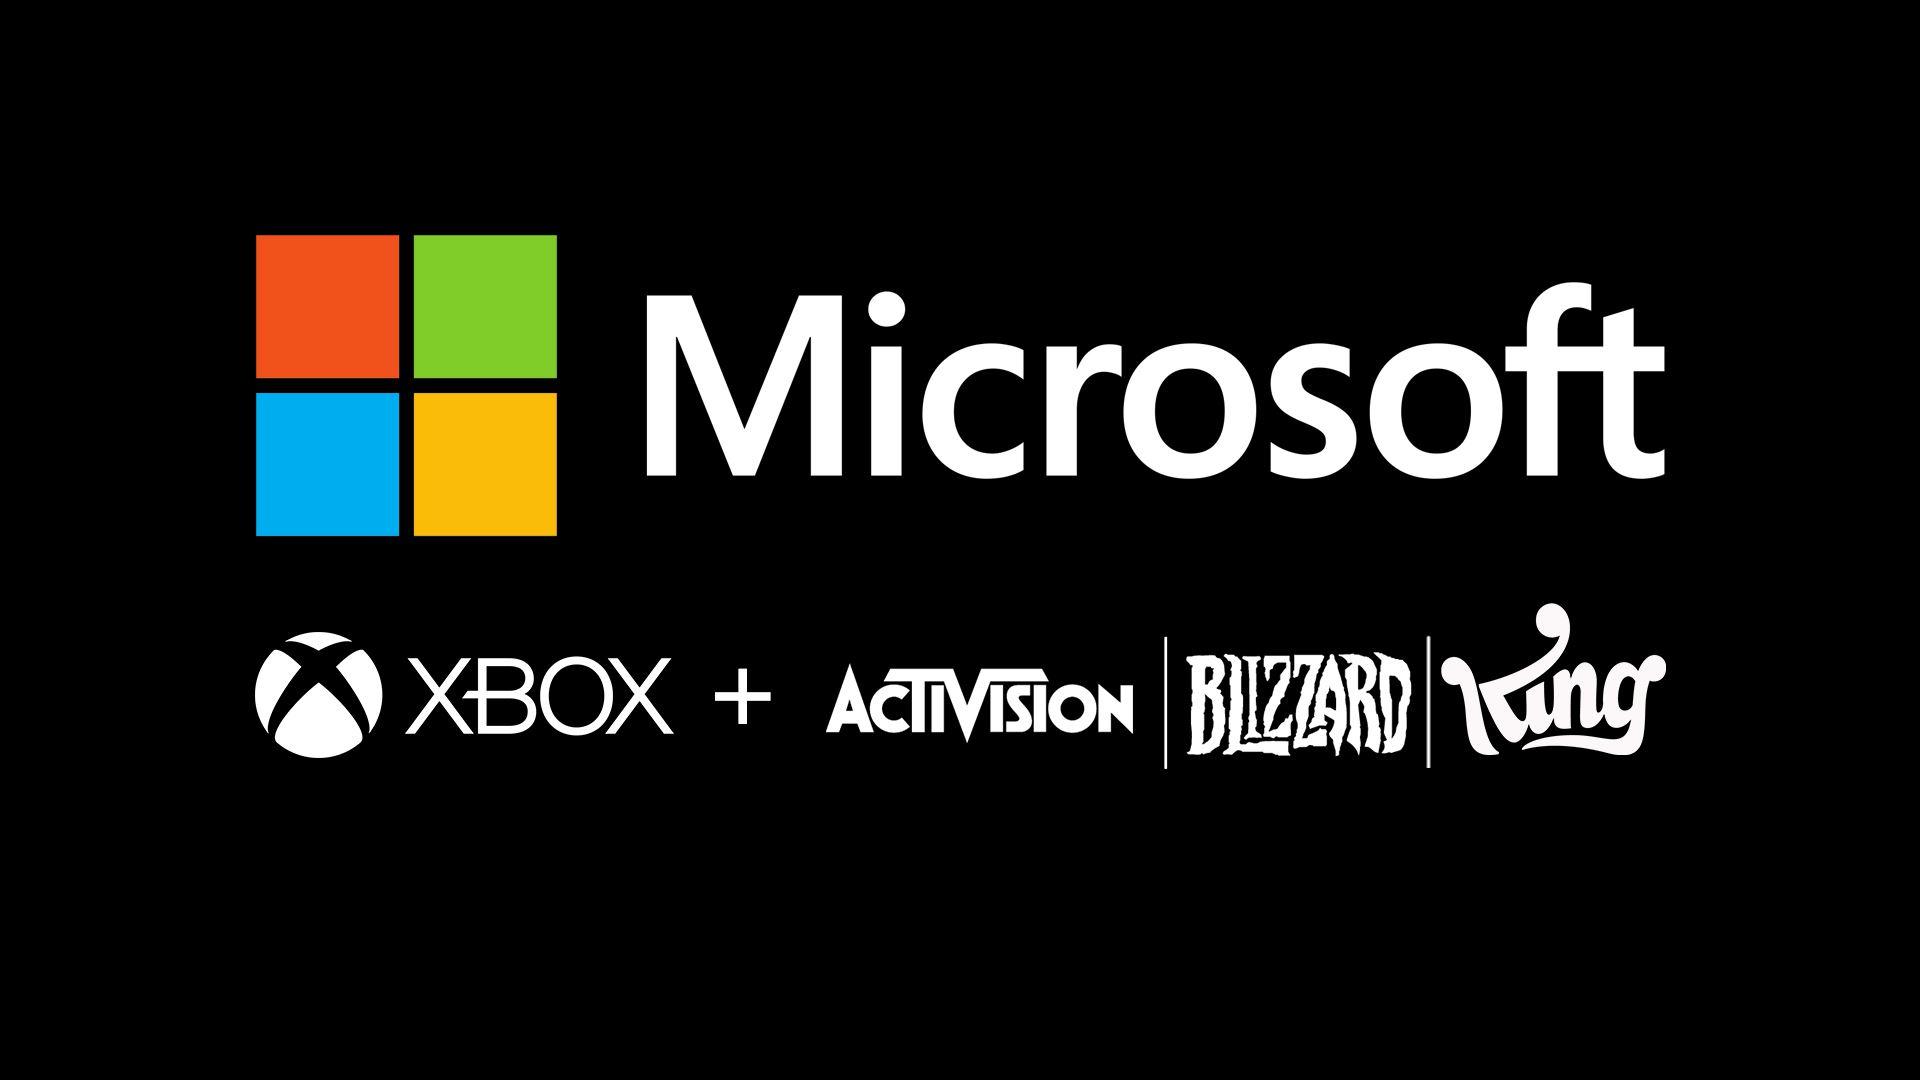 Ufficialmente: la Capital Markets Authority pre-approva l’acquisizione di Activision da parte di Microsoft!  |  Xbox One